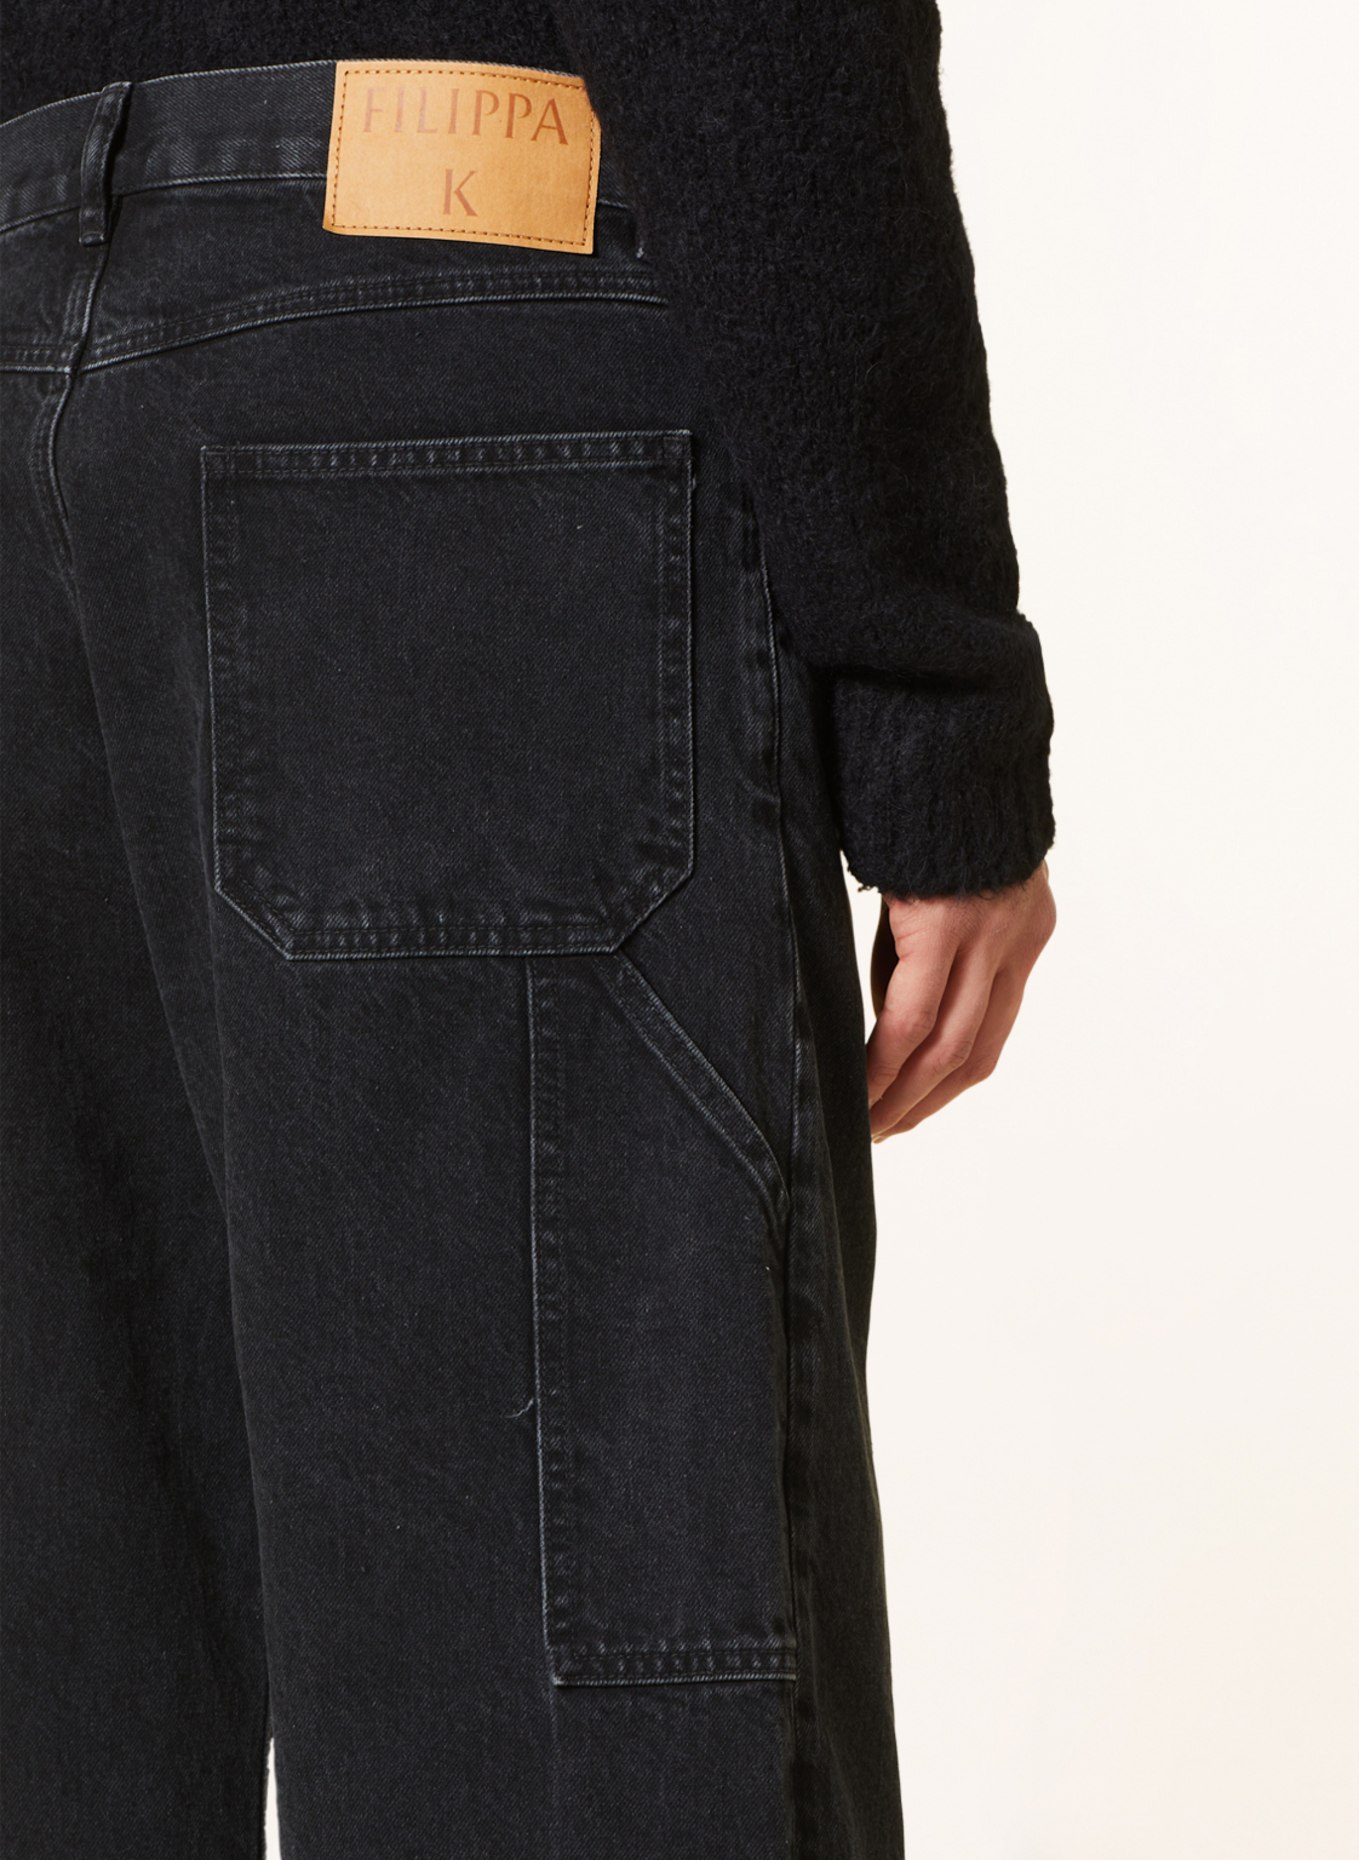 Filippa K Jeans regular fit, Color: 9897 Charcoal Black (Image 6)